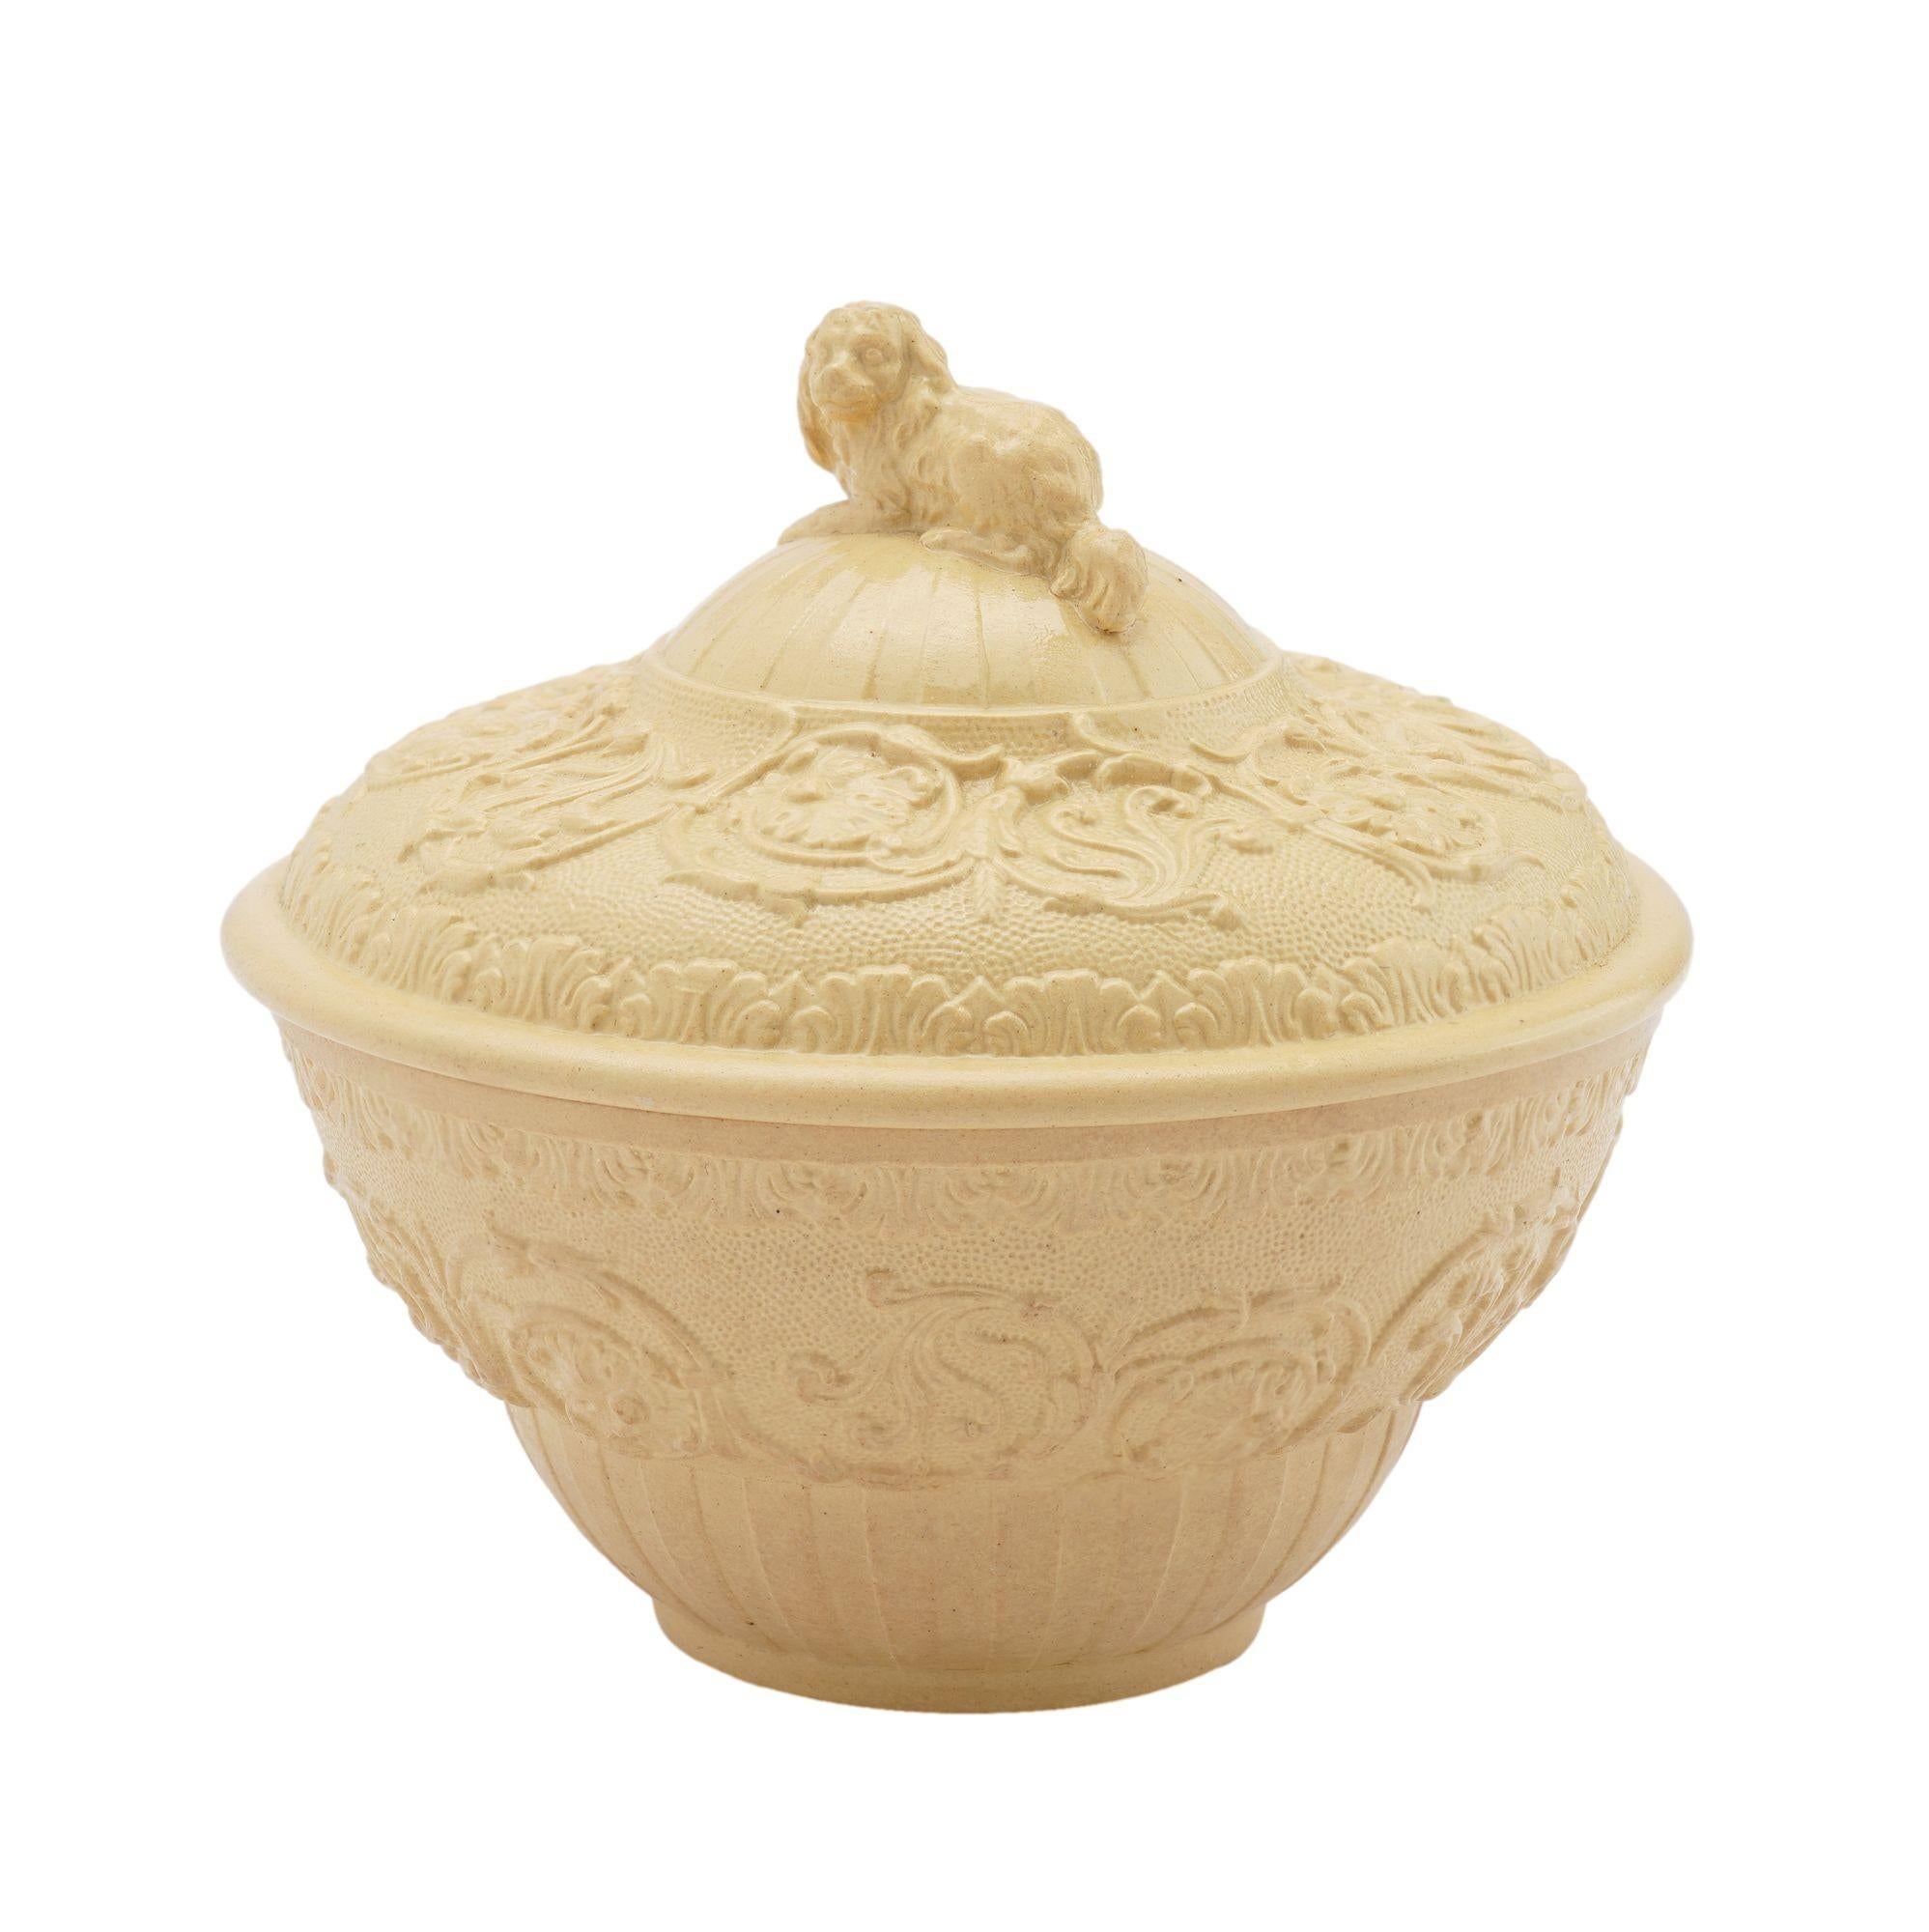 Zuckerdose aus Caneware-Keramik mit Deckel und erhabenem Oberflächendekor und einem King-Charles-Spaniel als Abschluss auf dem Deckel.
Auf der Unterseite gestempelt: Wedgwood

England, ca. 1815-20.